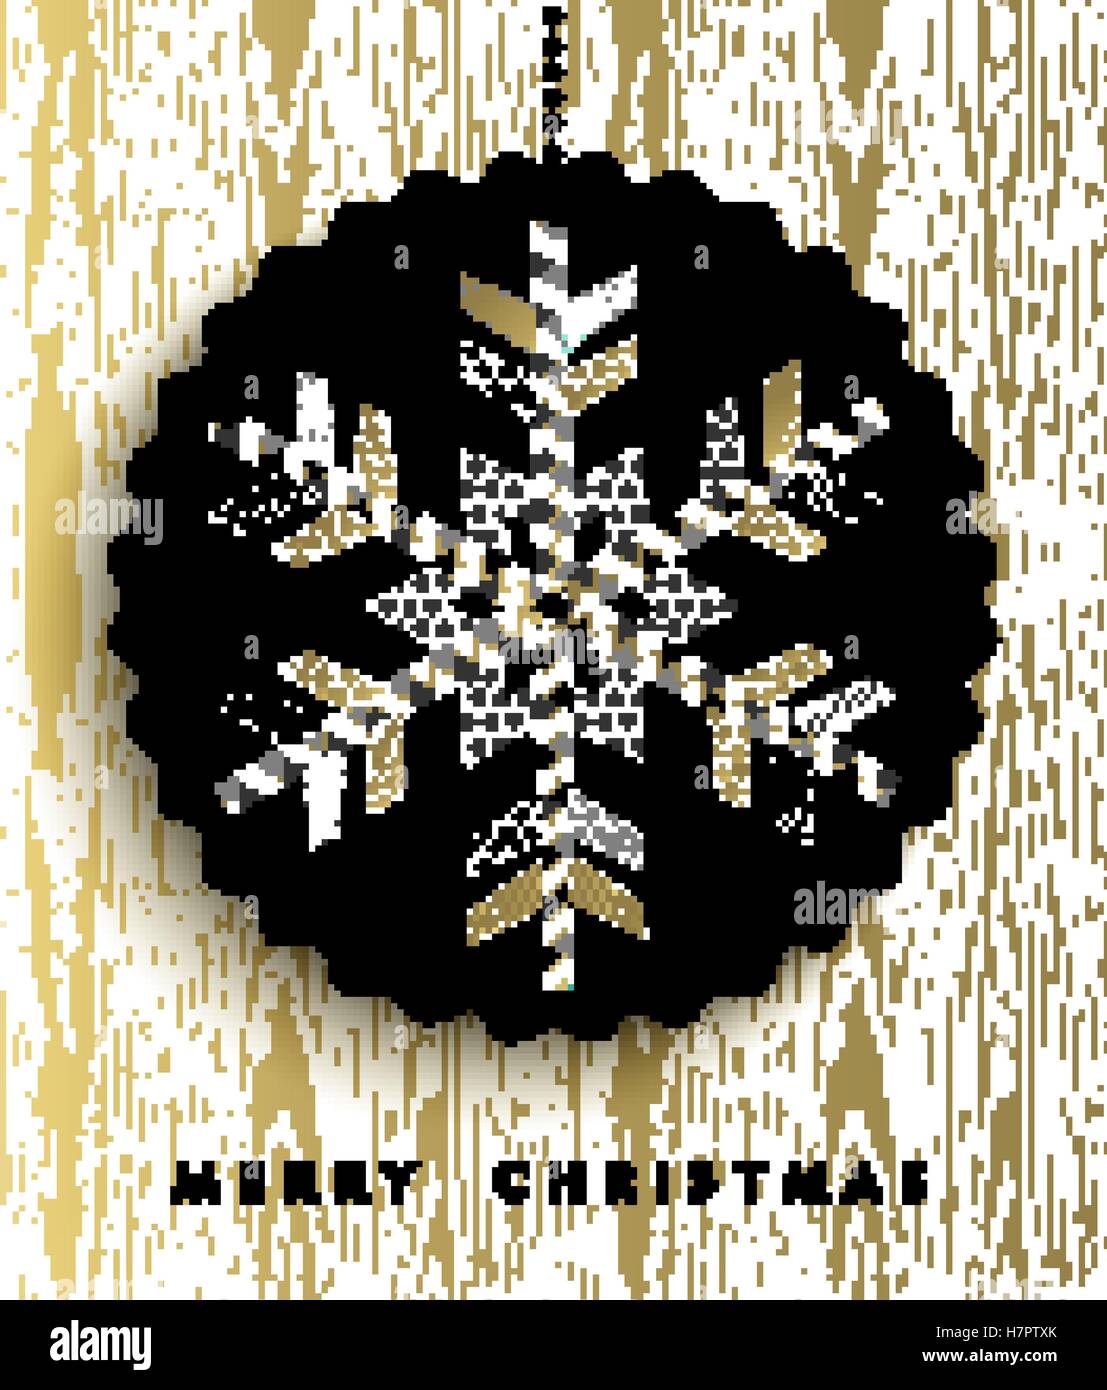 Frohe Weihnachten Grußkarte Design, gold Schneeflocke-Darstellung von geometrischen abstrakten Formen gemacht. EPS10 Vektor. Stock Vektor